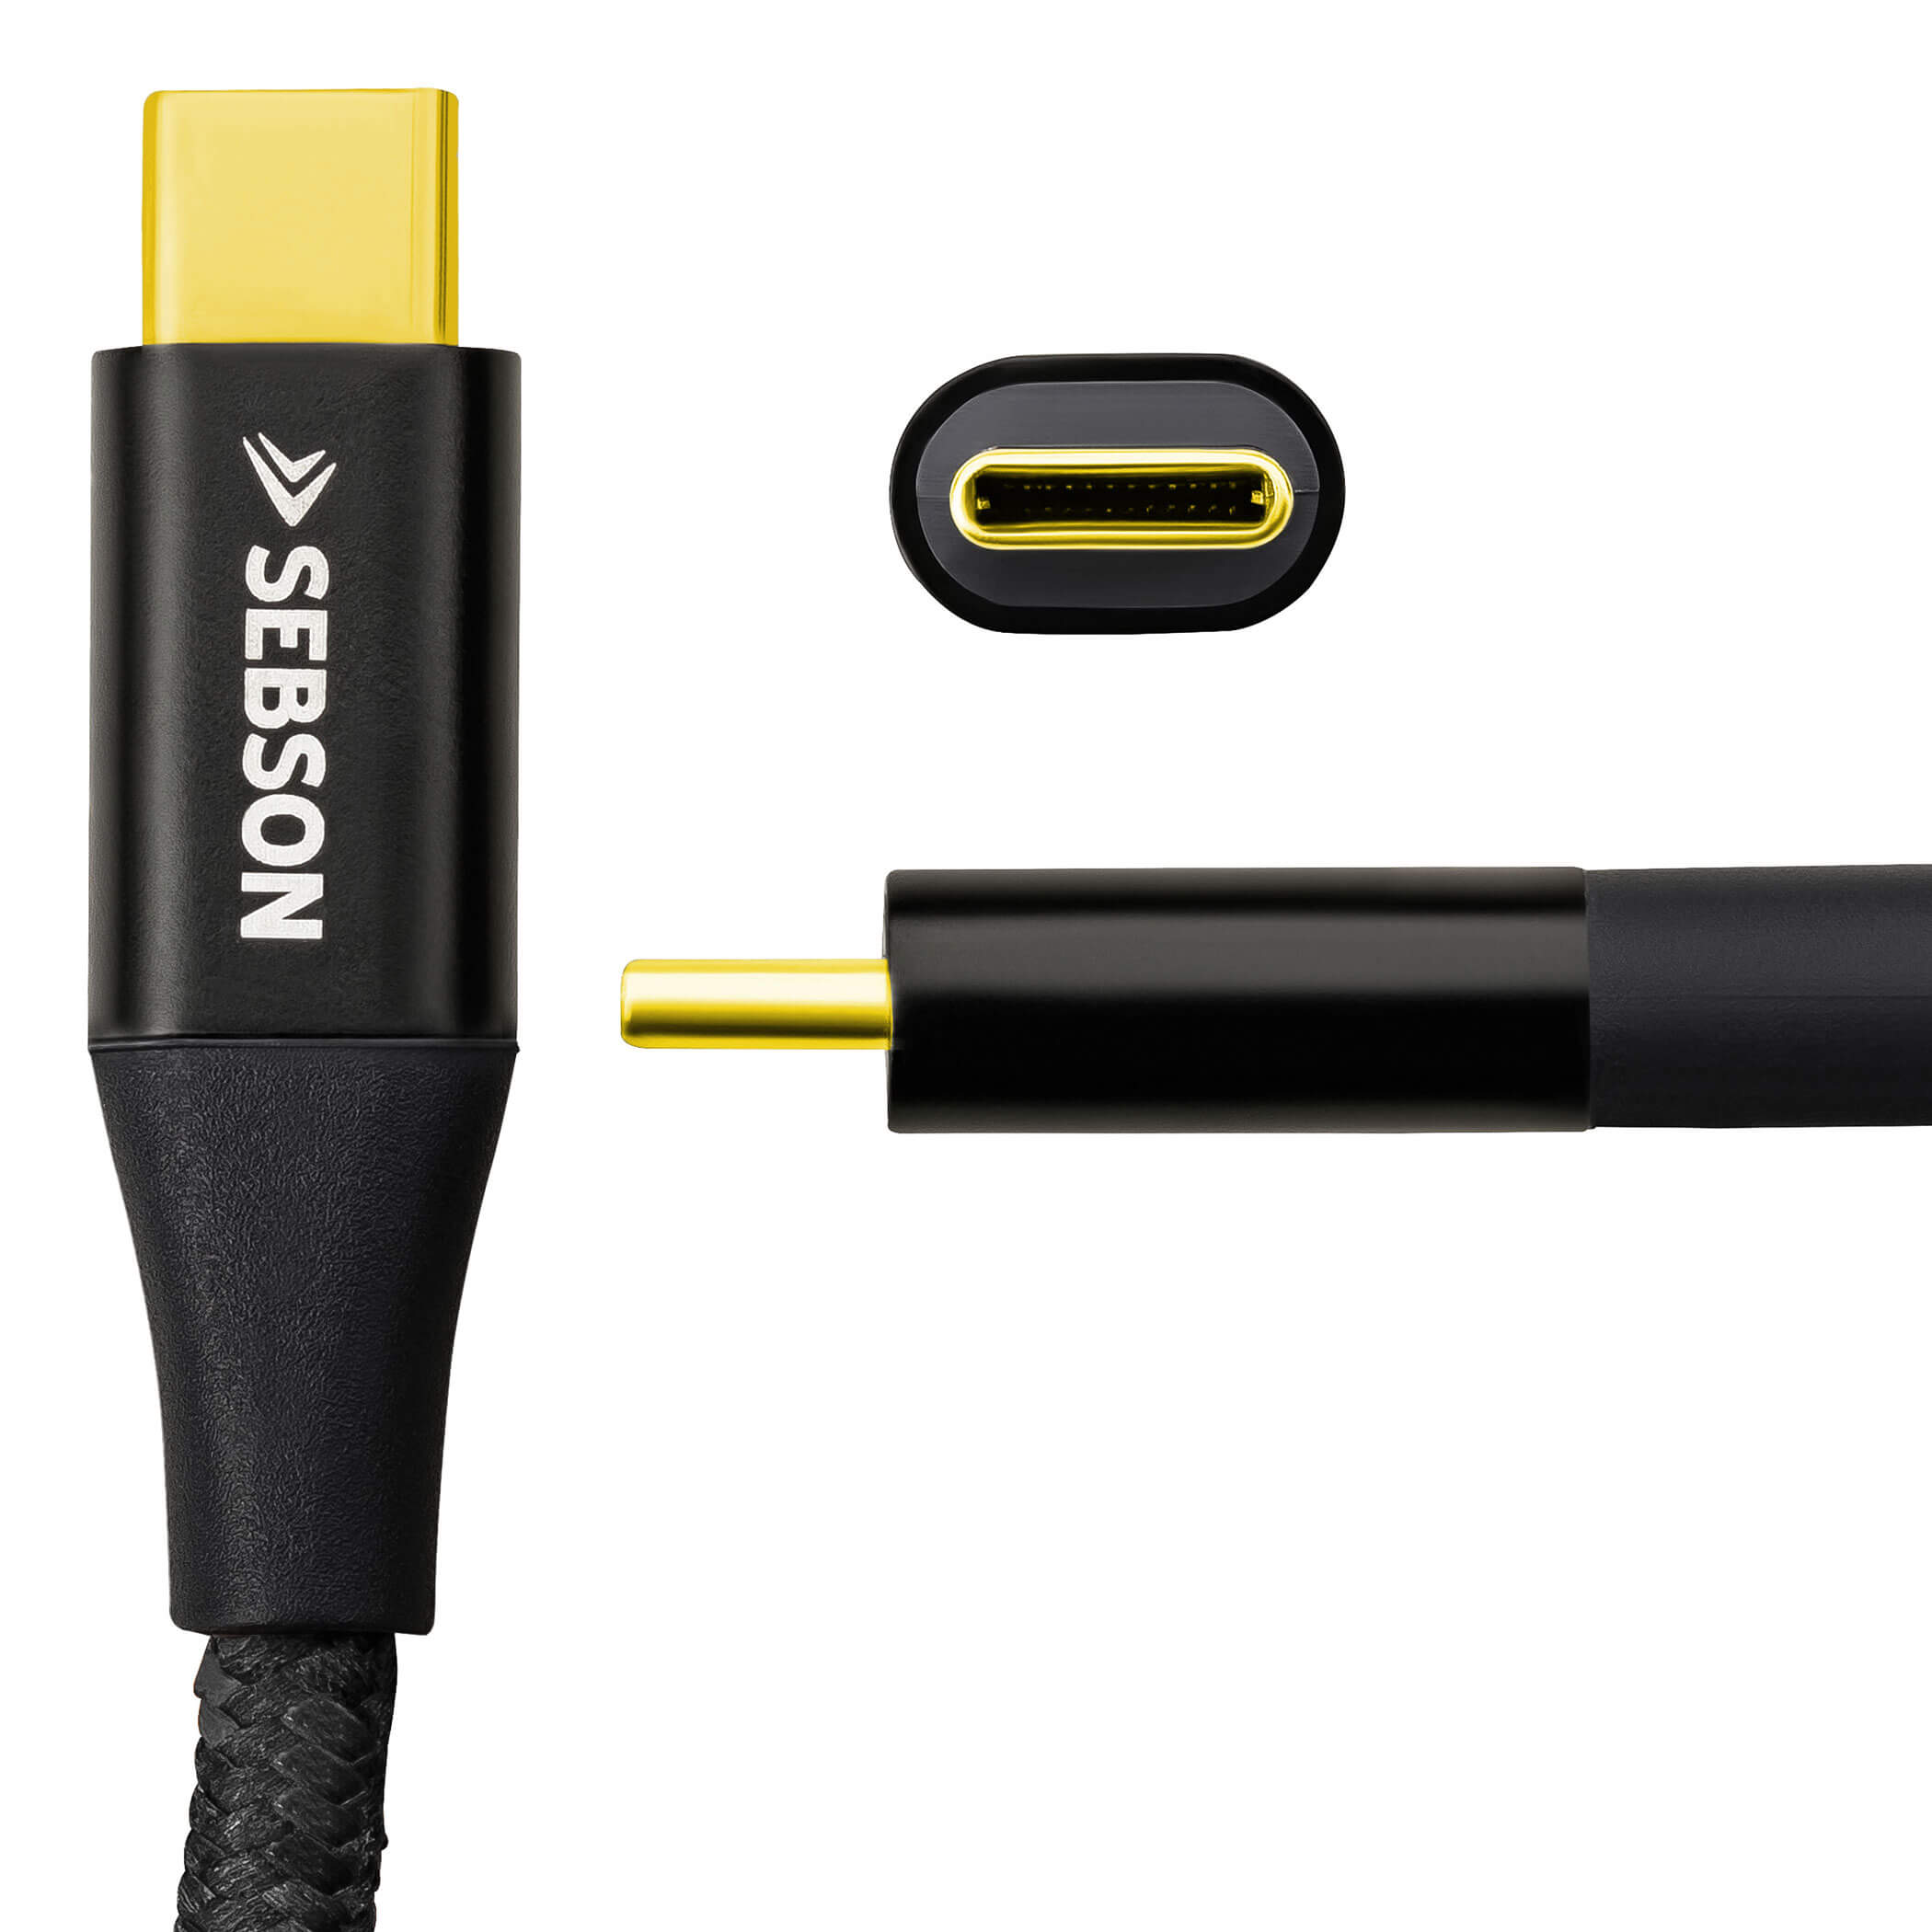 SEBSON USB3_CG2_1M_A USB Kabel